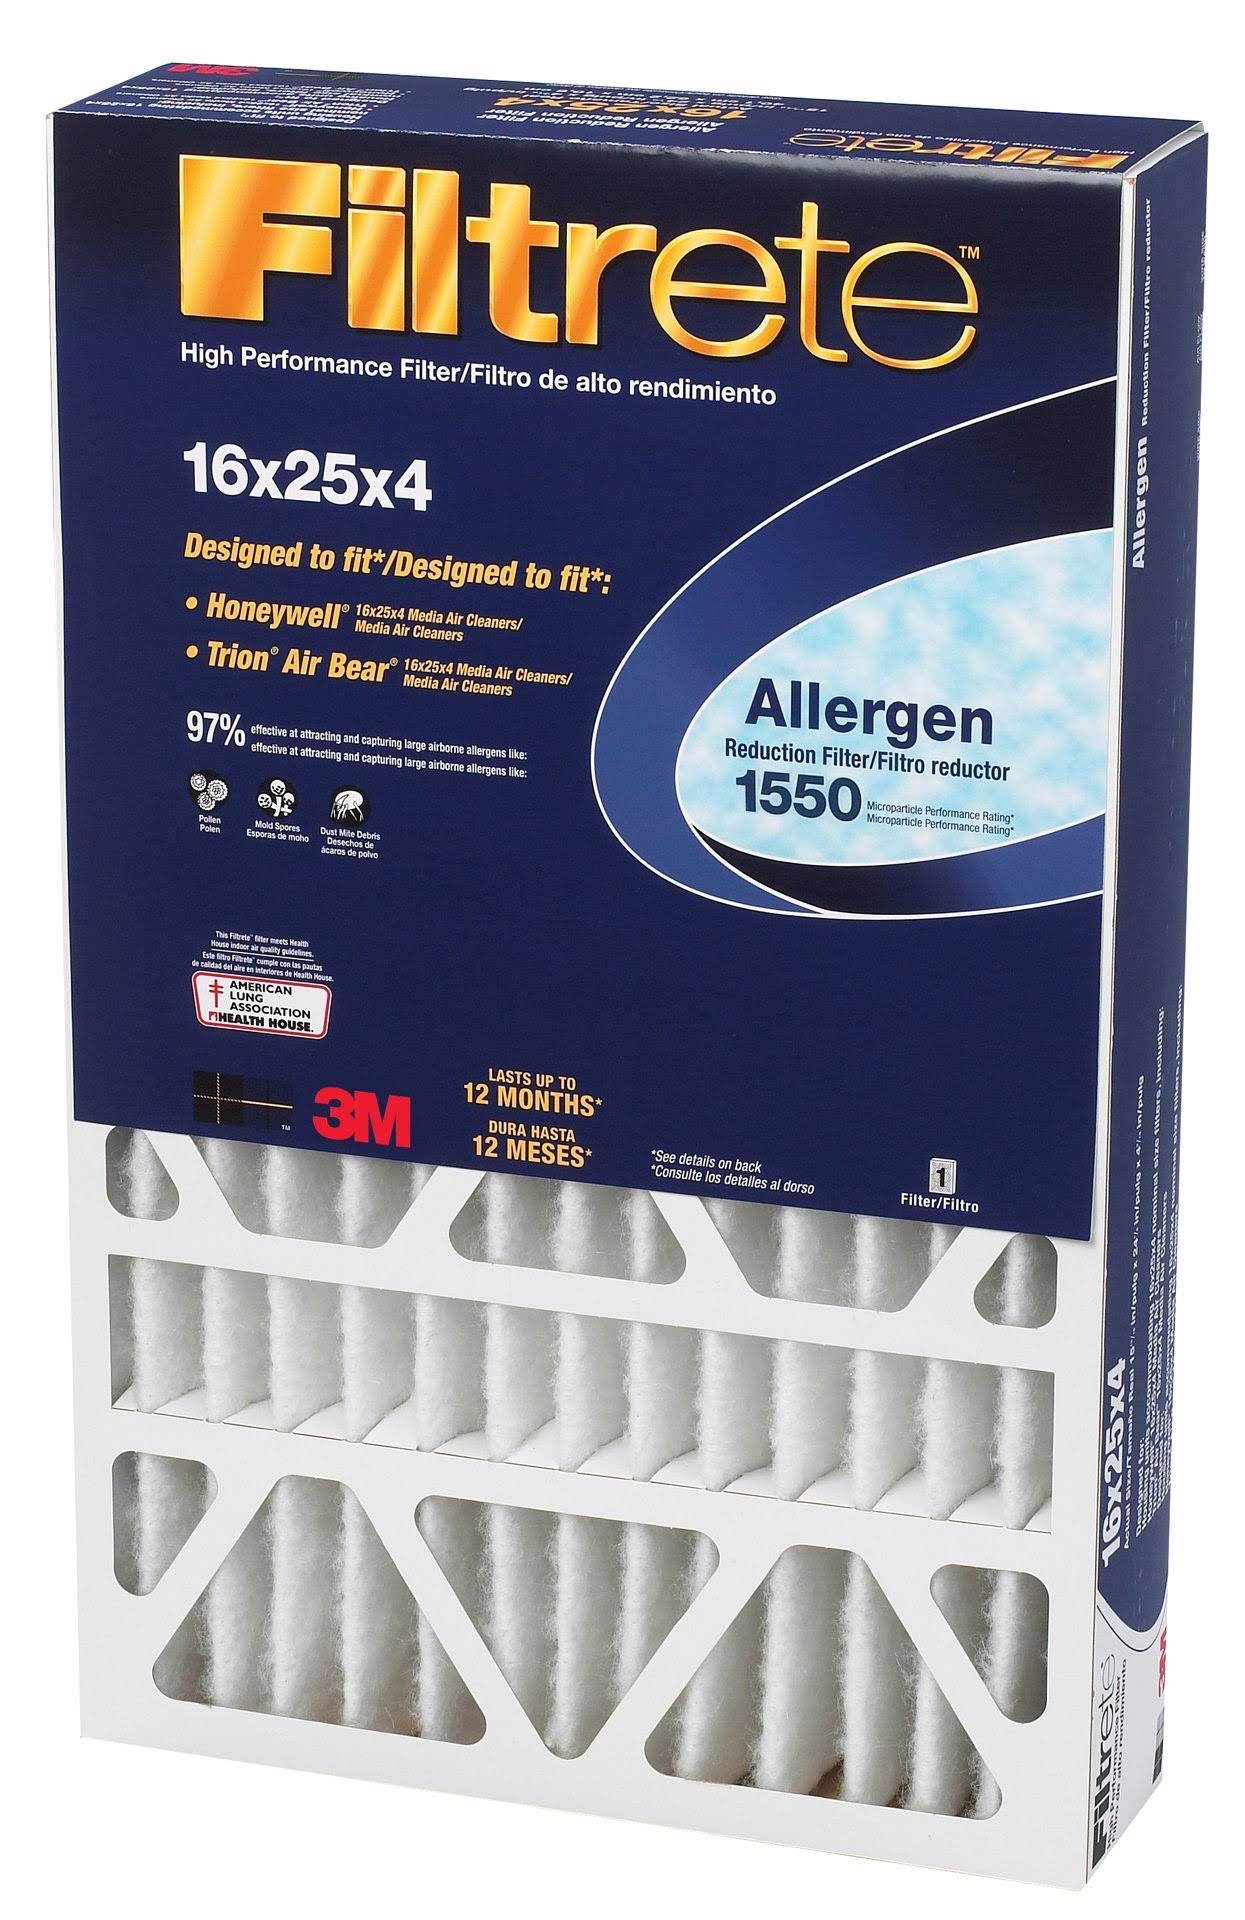 Filtrete 1550 Allergen Reduction Filter - 16"x25"x4"